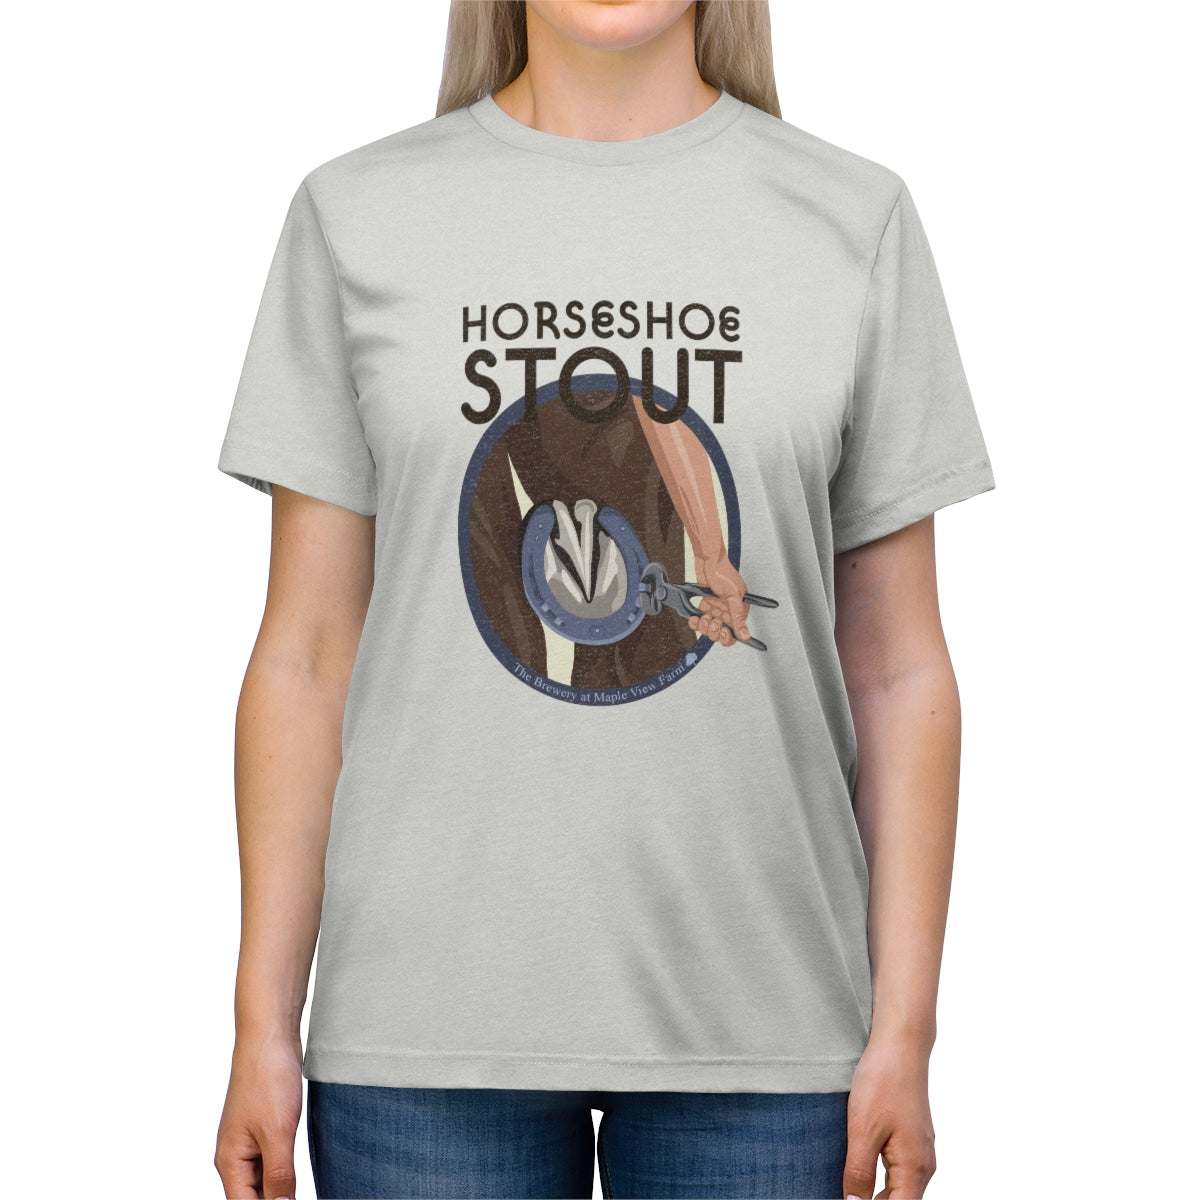 Horseshoe Stout